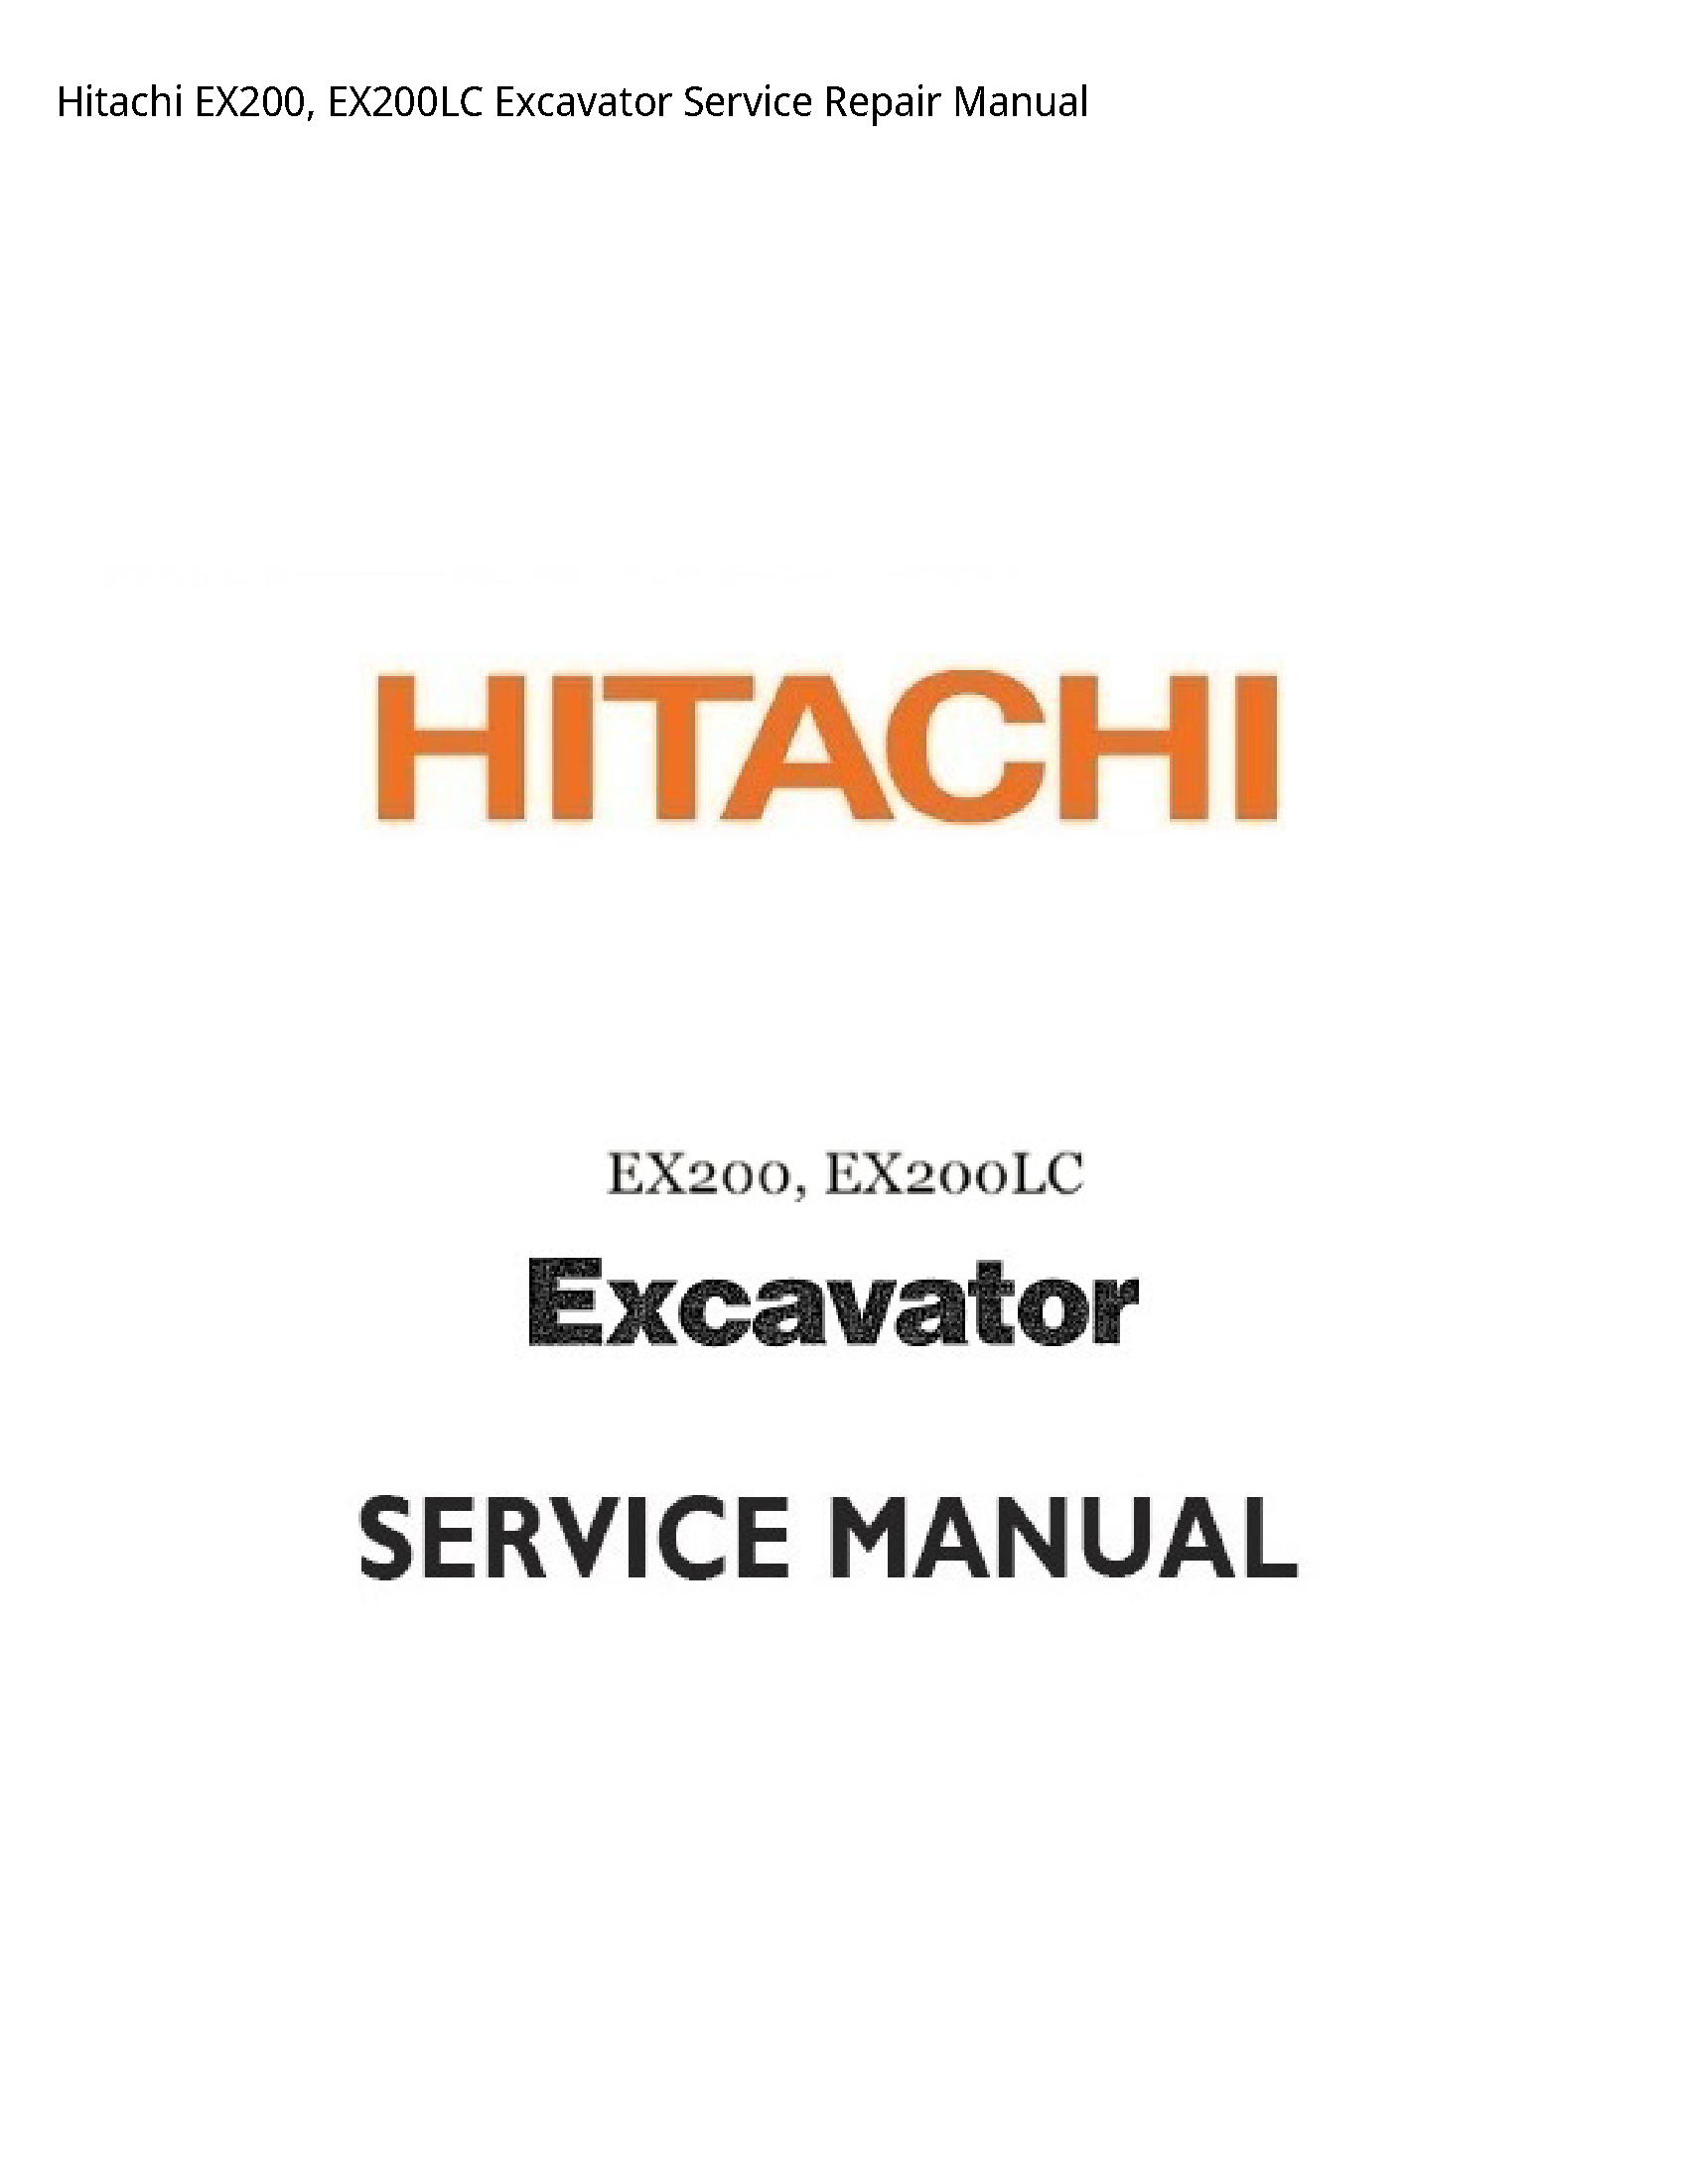 Hitachi EX200 Excavator manual